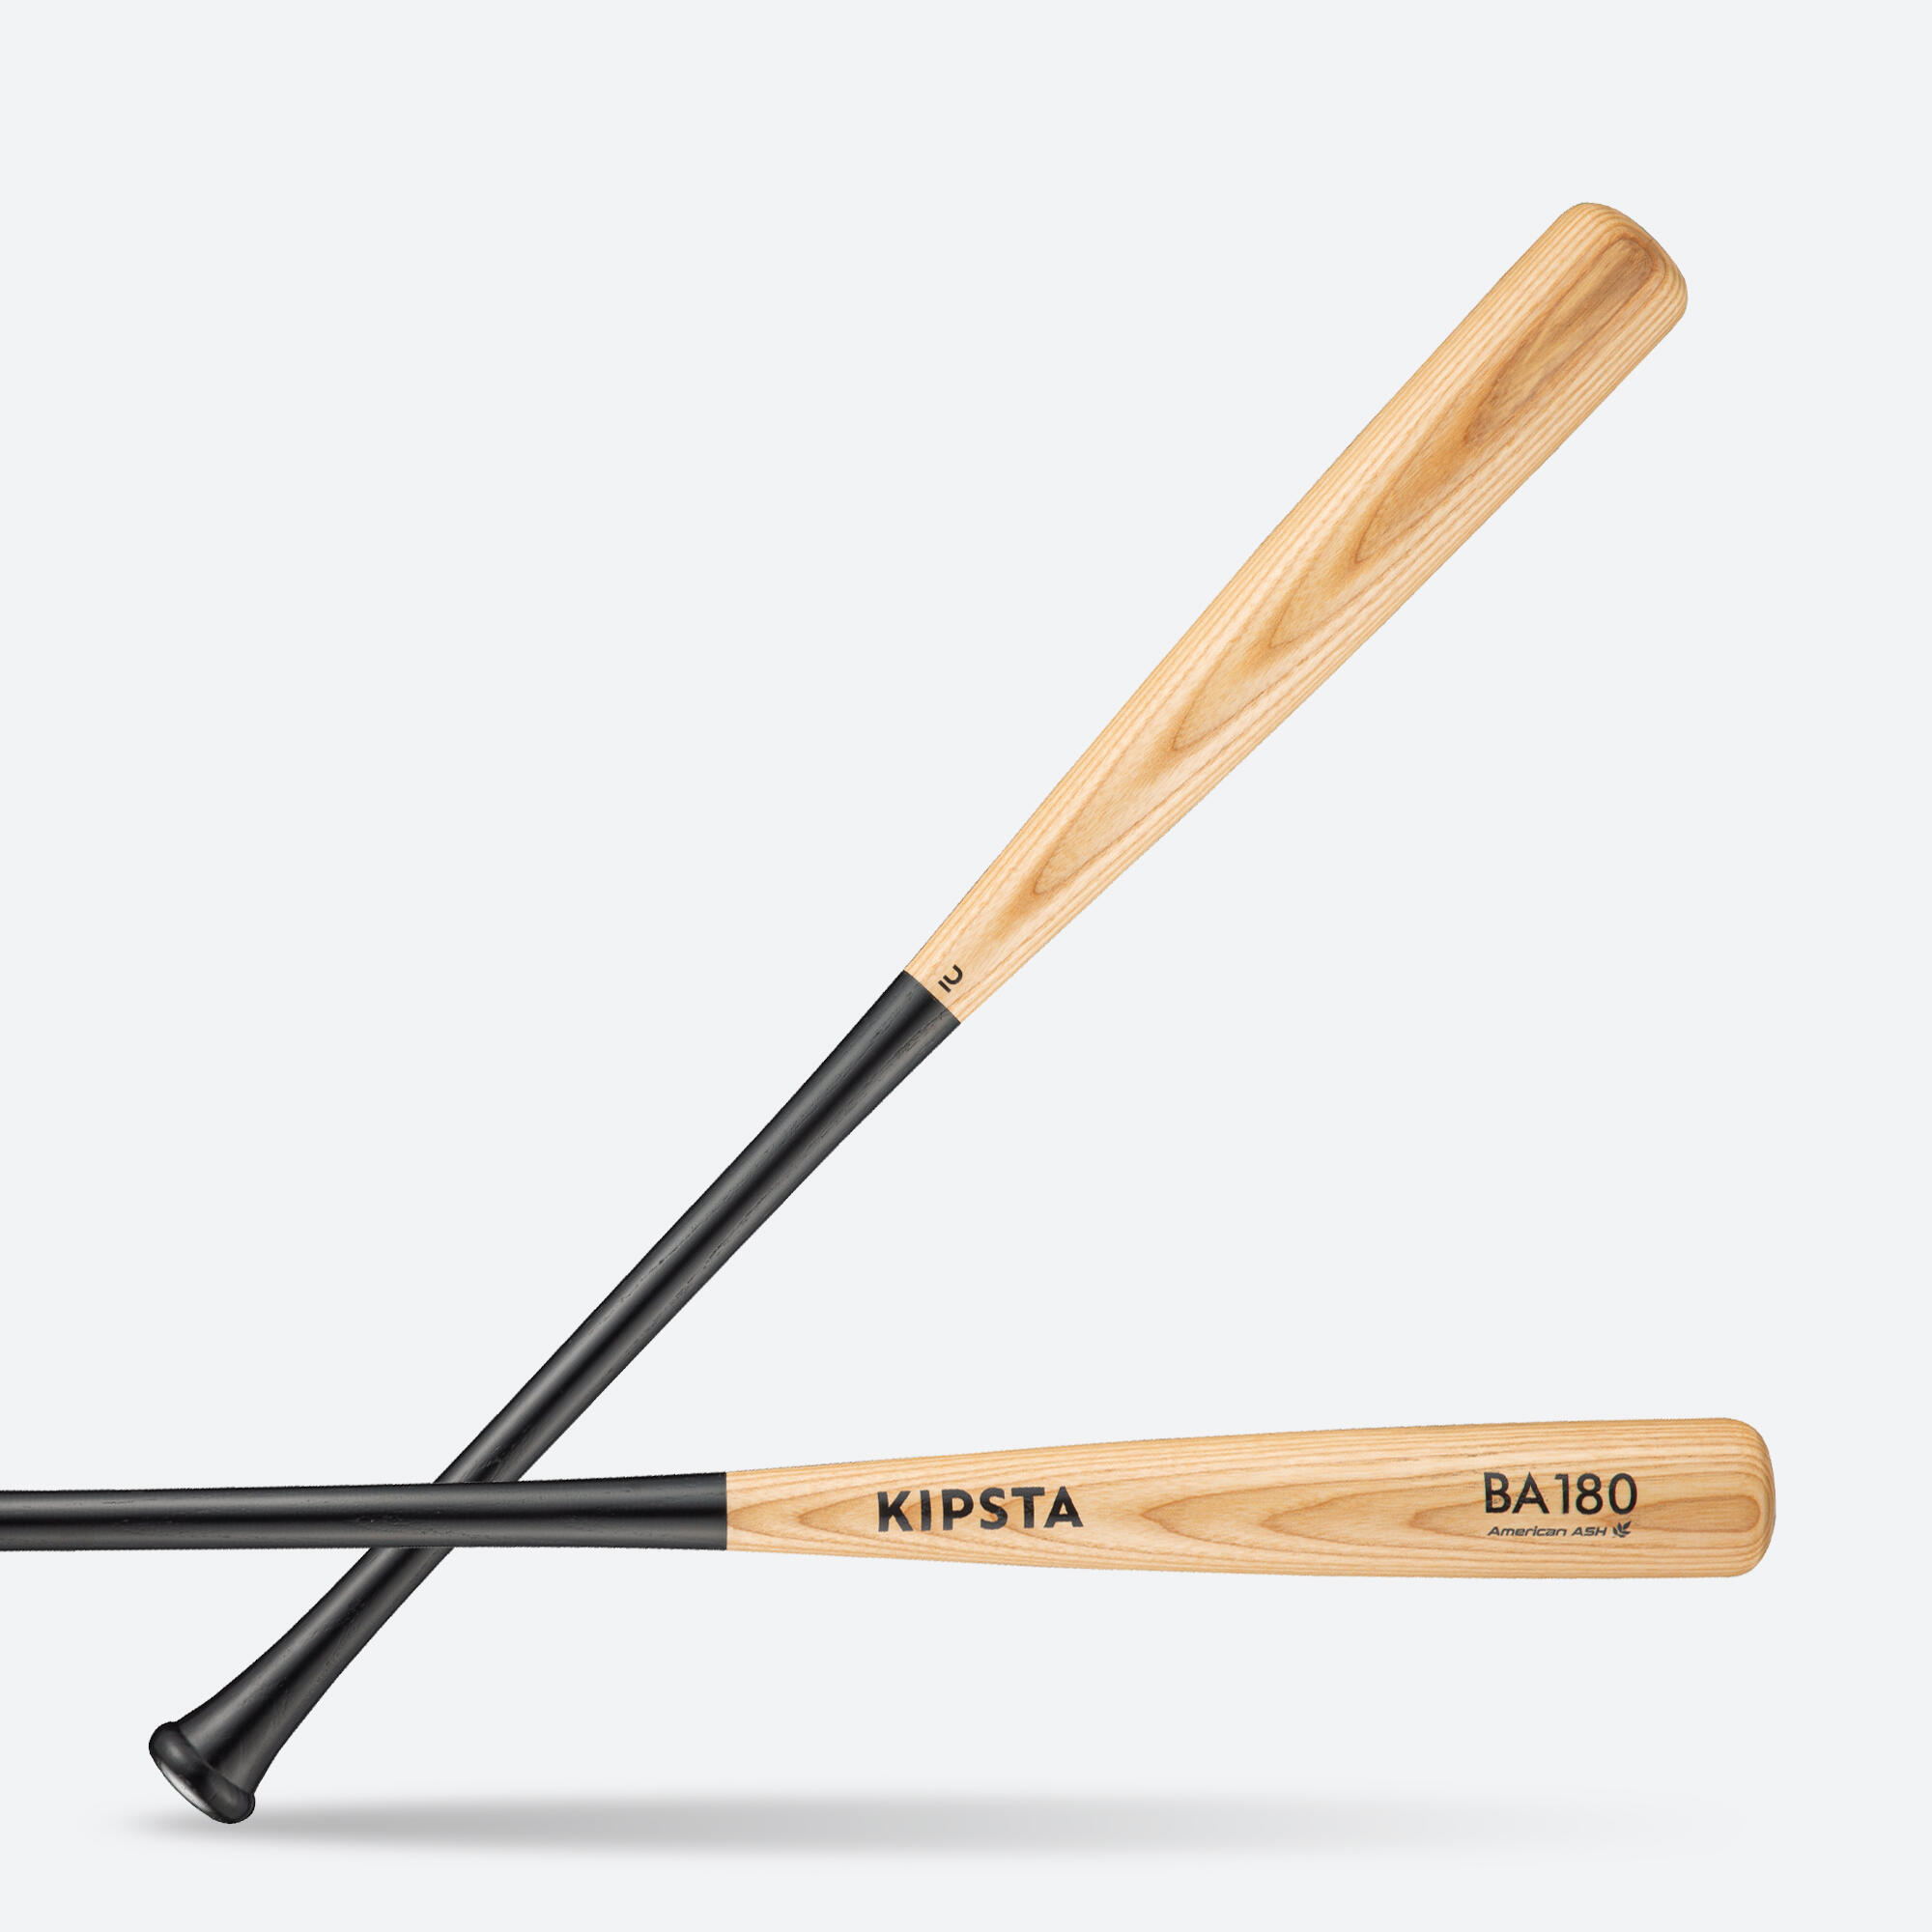 Bâtă de baseball BA180 din lemn de frasin 2022 30″/33″ KIPSTA 2022